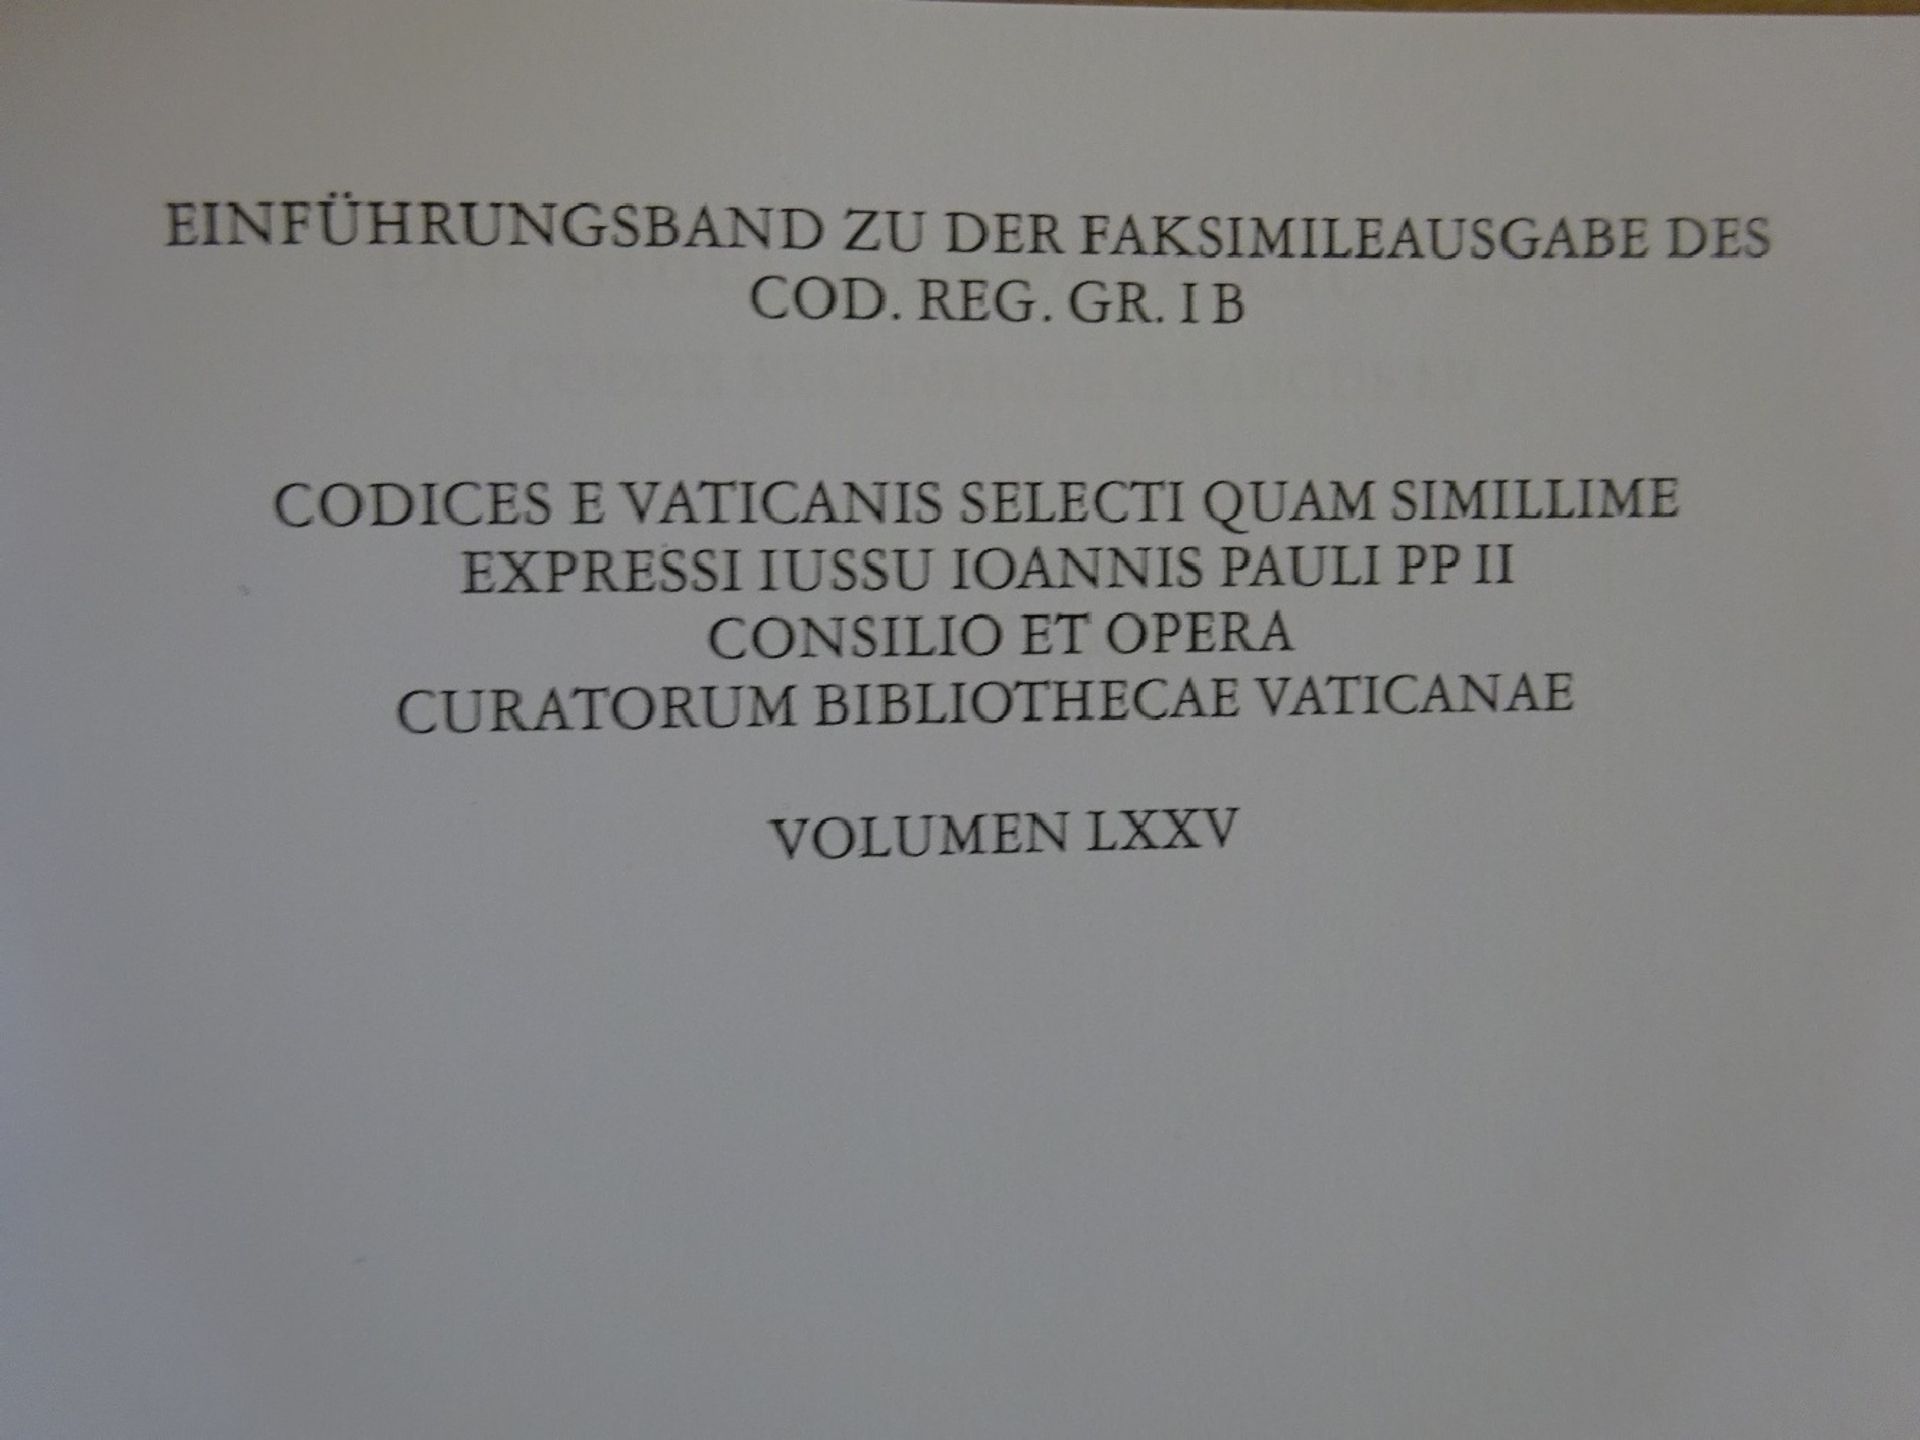 Bibel des Patricius Leo - Faksimile - Image 6 of 8